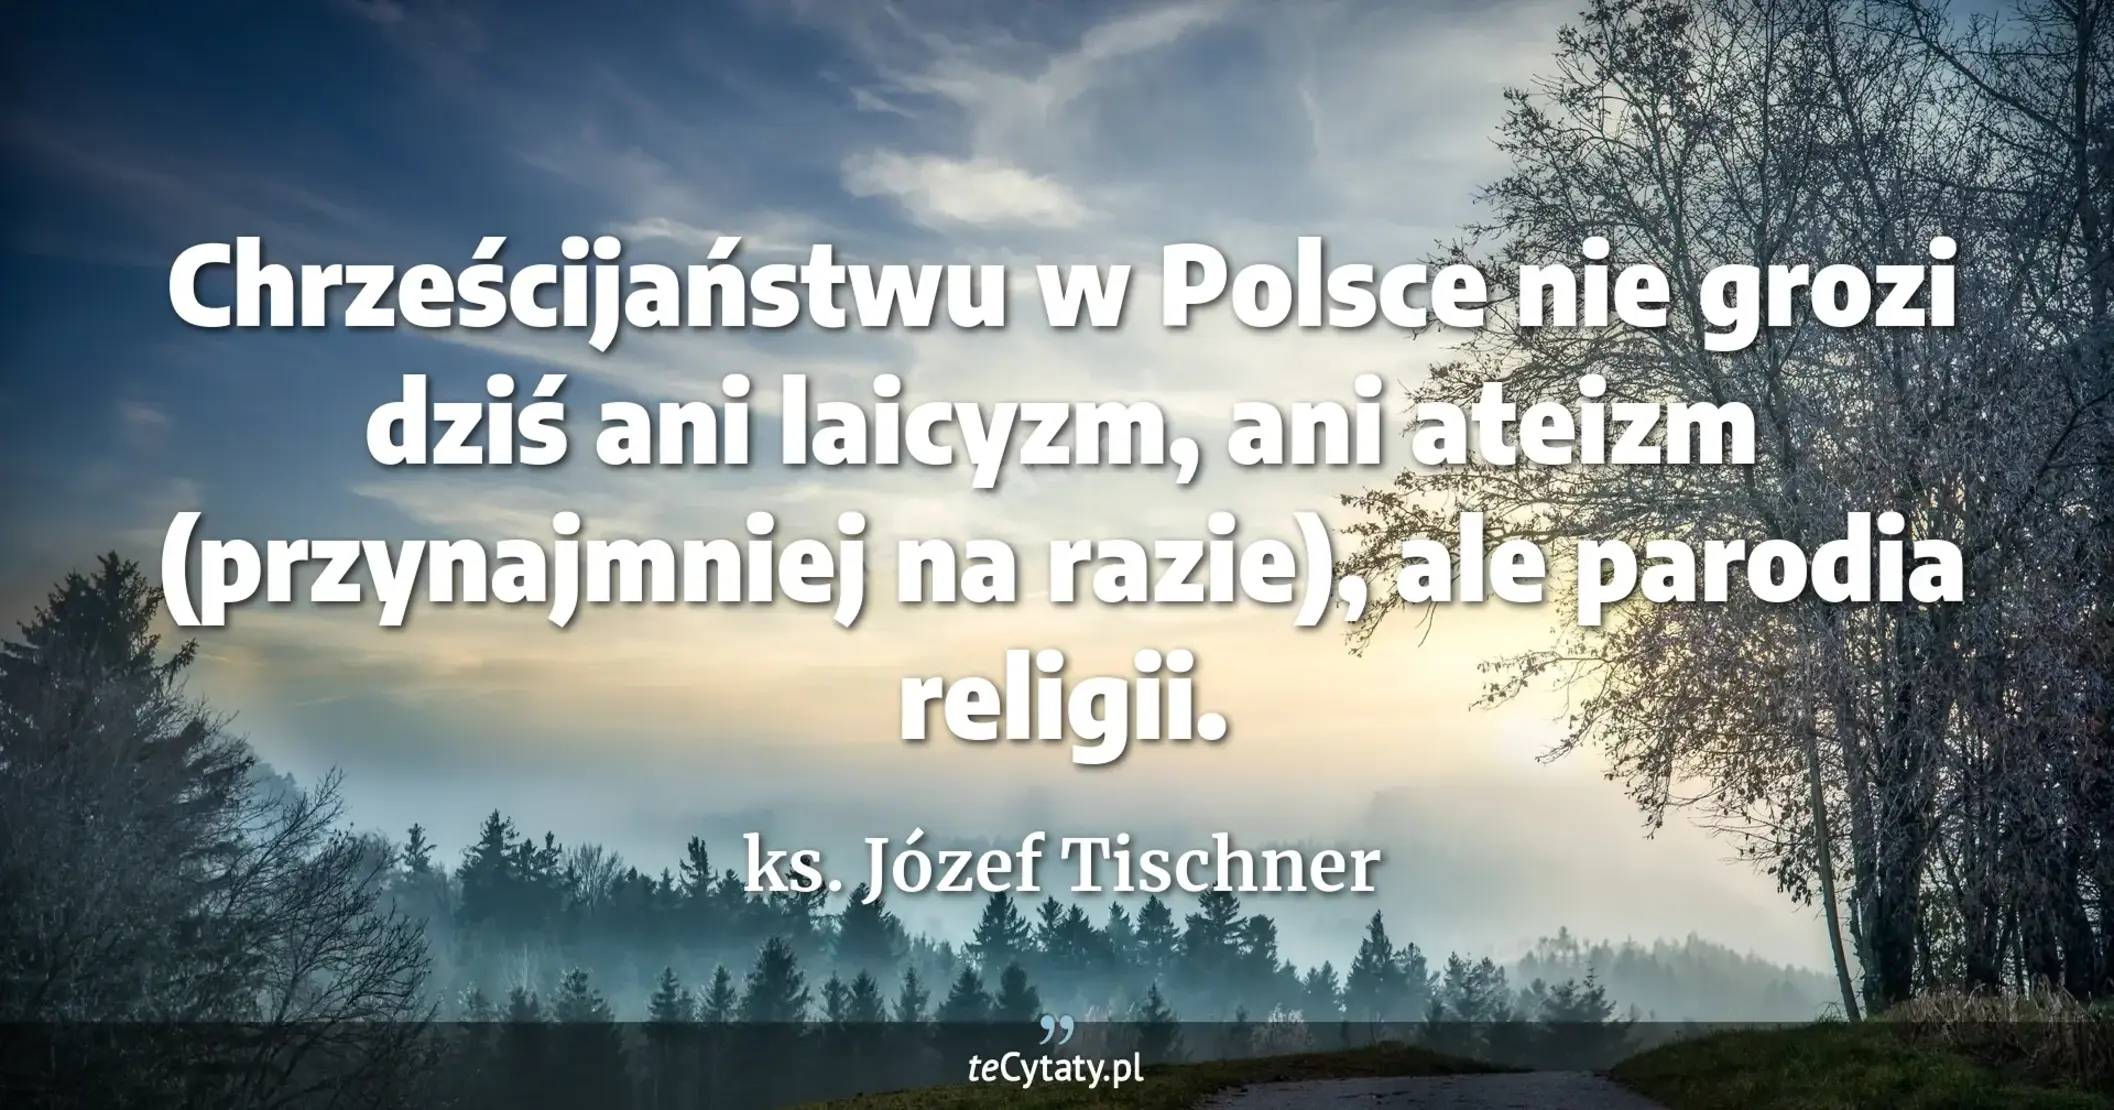 Chrześcijaństwu w Polsce nie grozi dziś ani laicyzm, ani ateizm (przynajmniej na razie), ale parodia religii. - ks. Józef Tischner